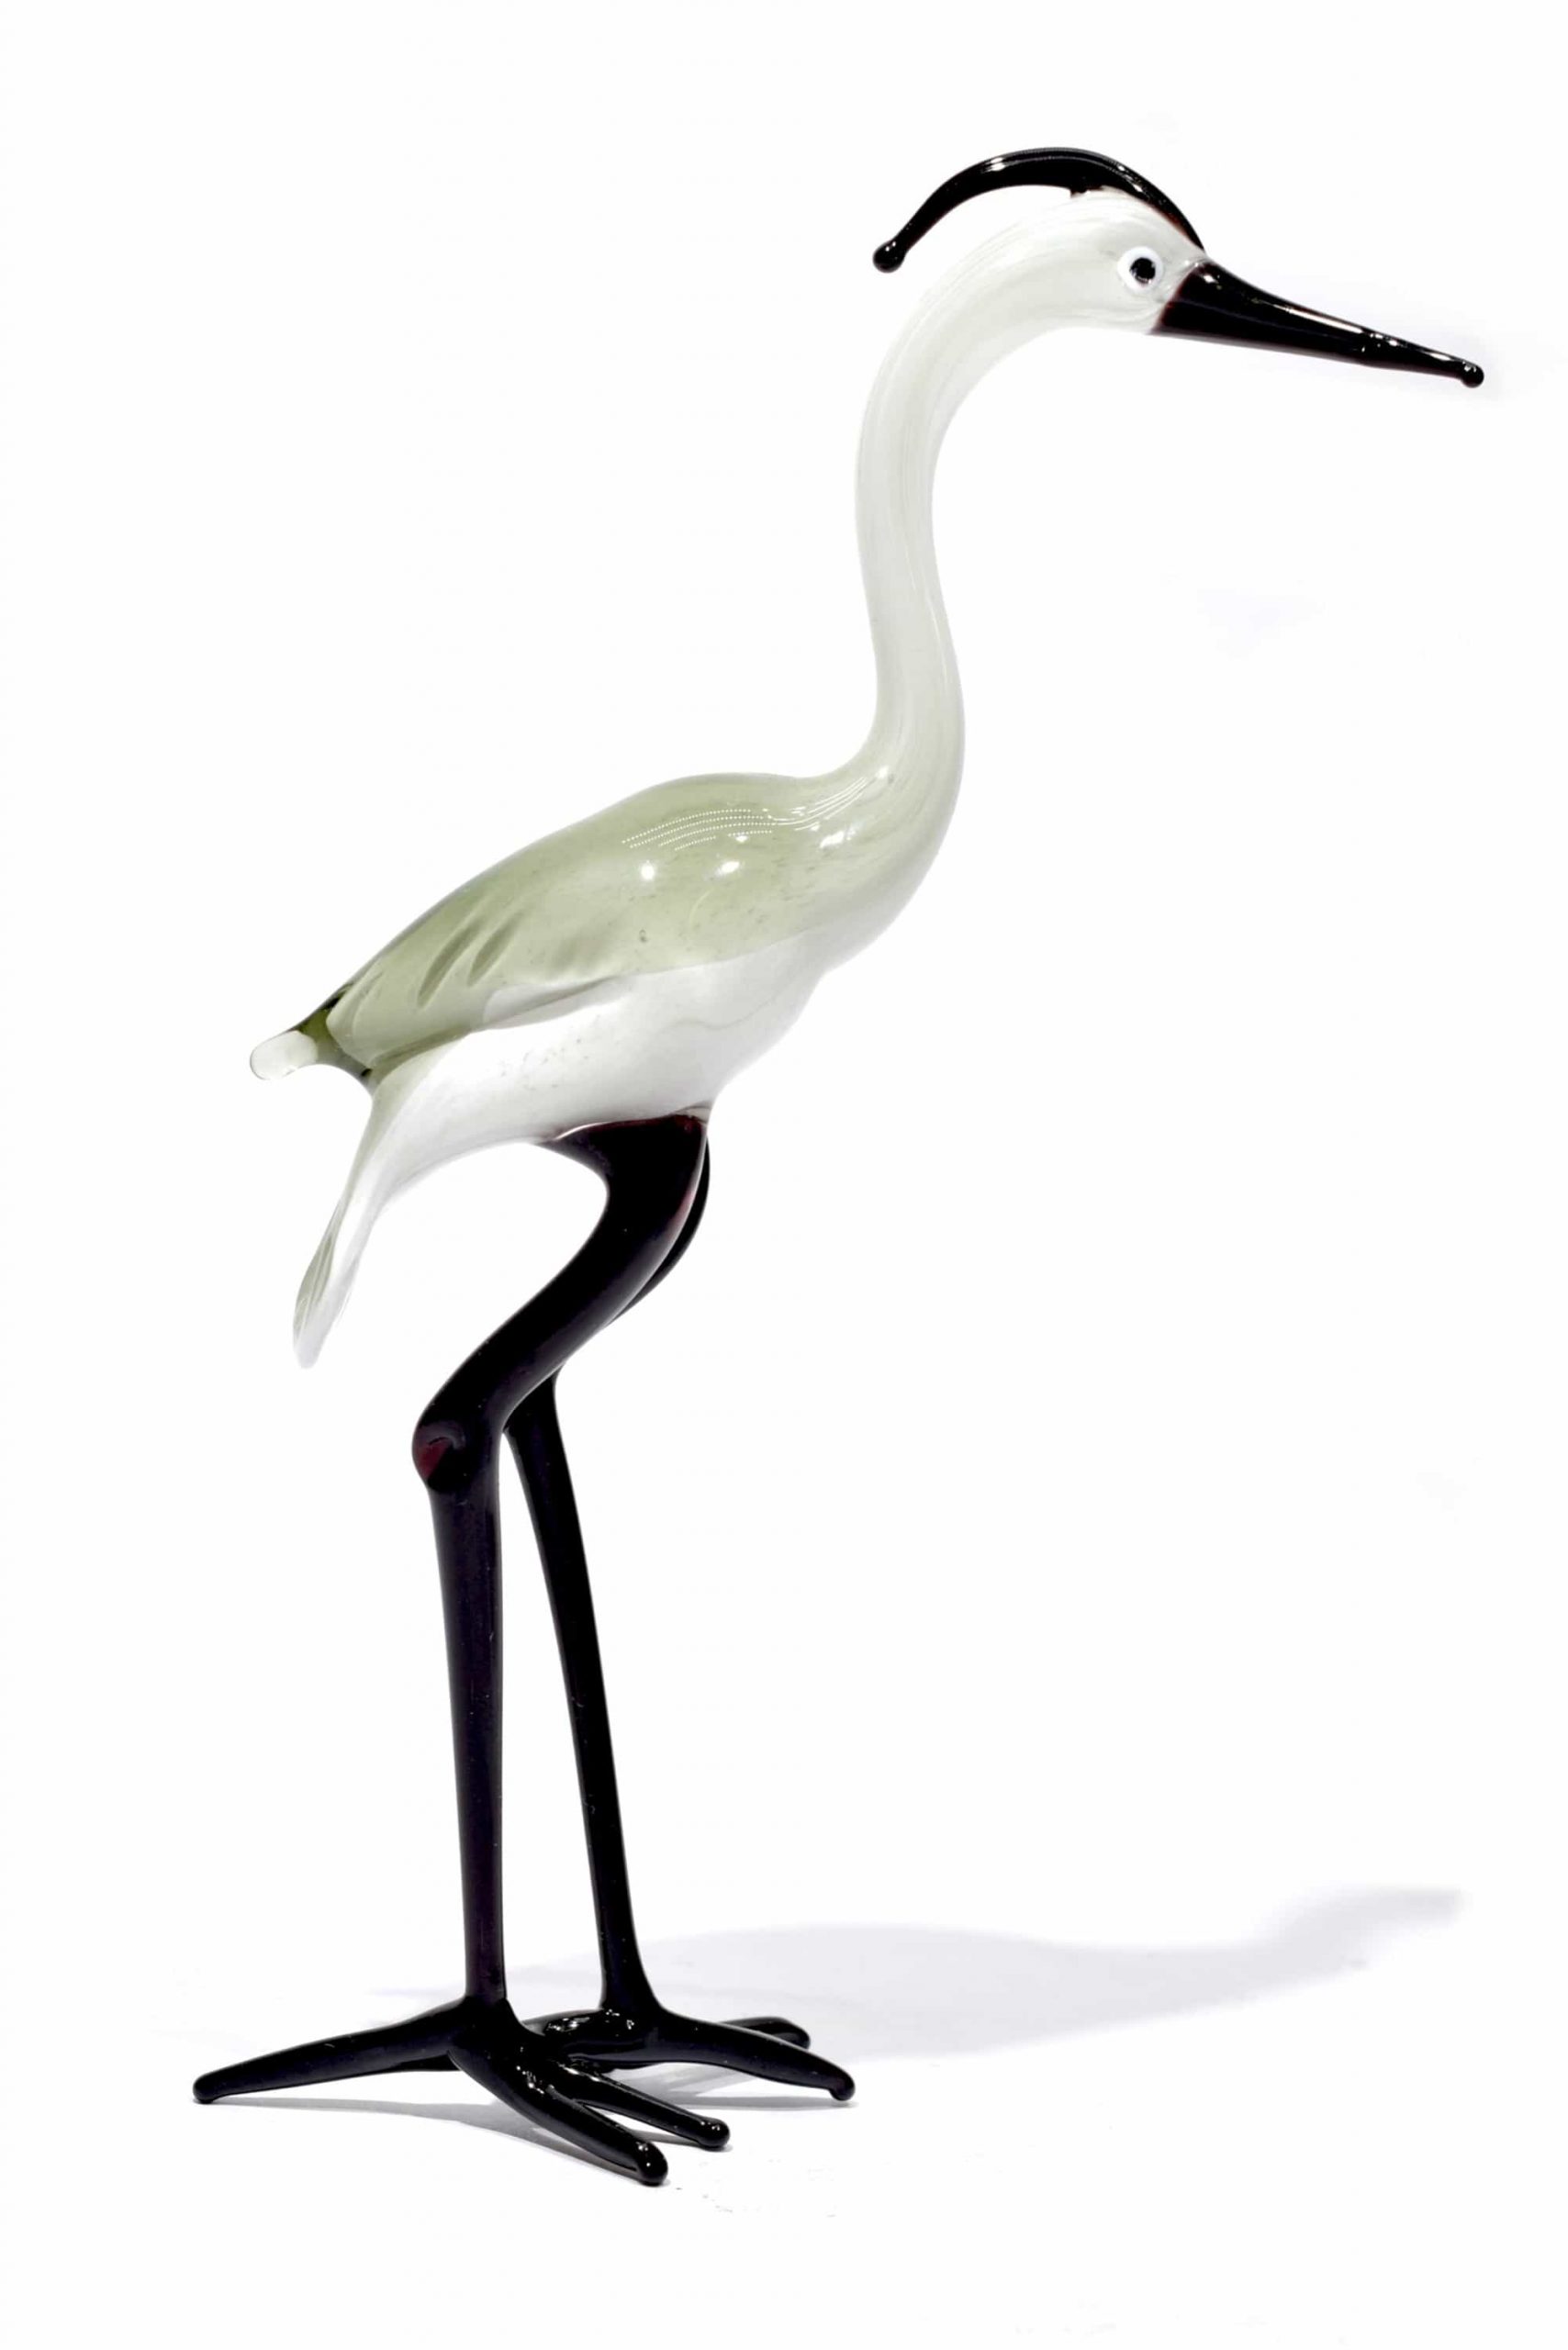 heron-cenerino-in-glass-of-Murano